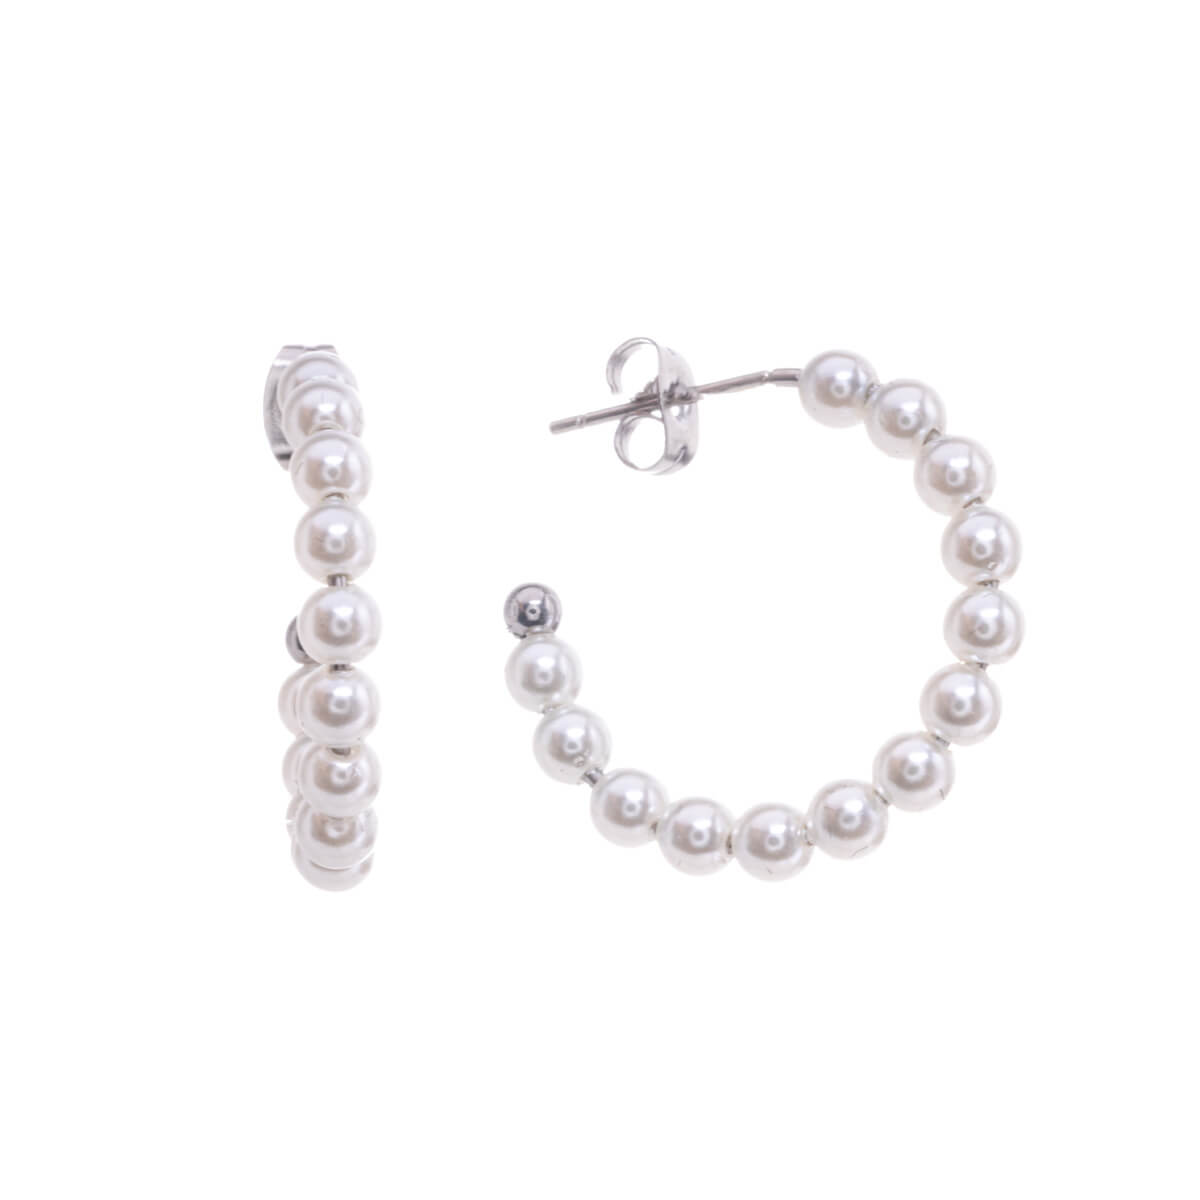 Steel pearl earrings 2,6cm (Steel 316L)